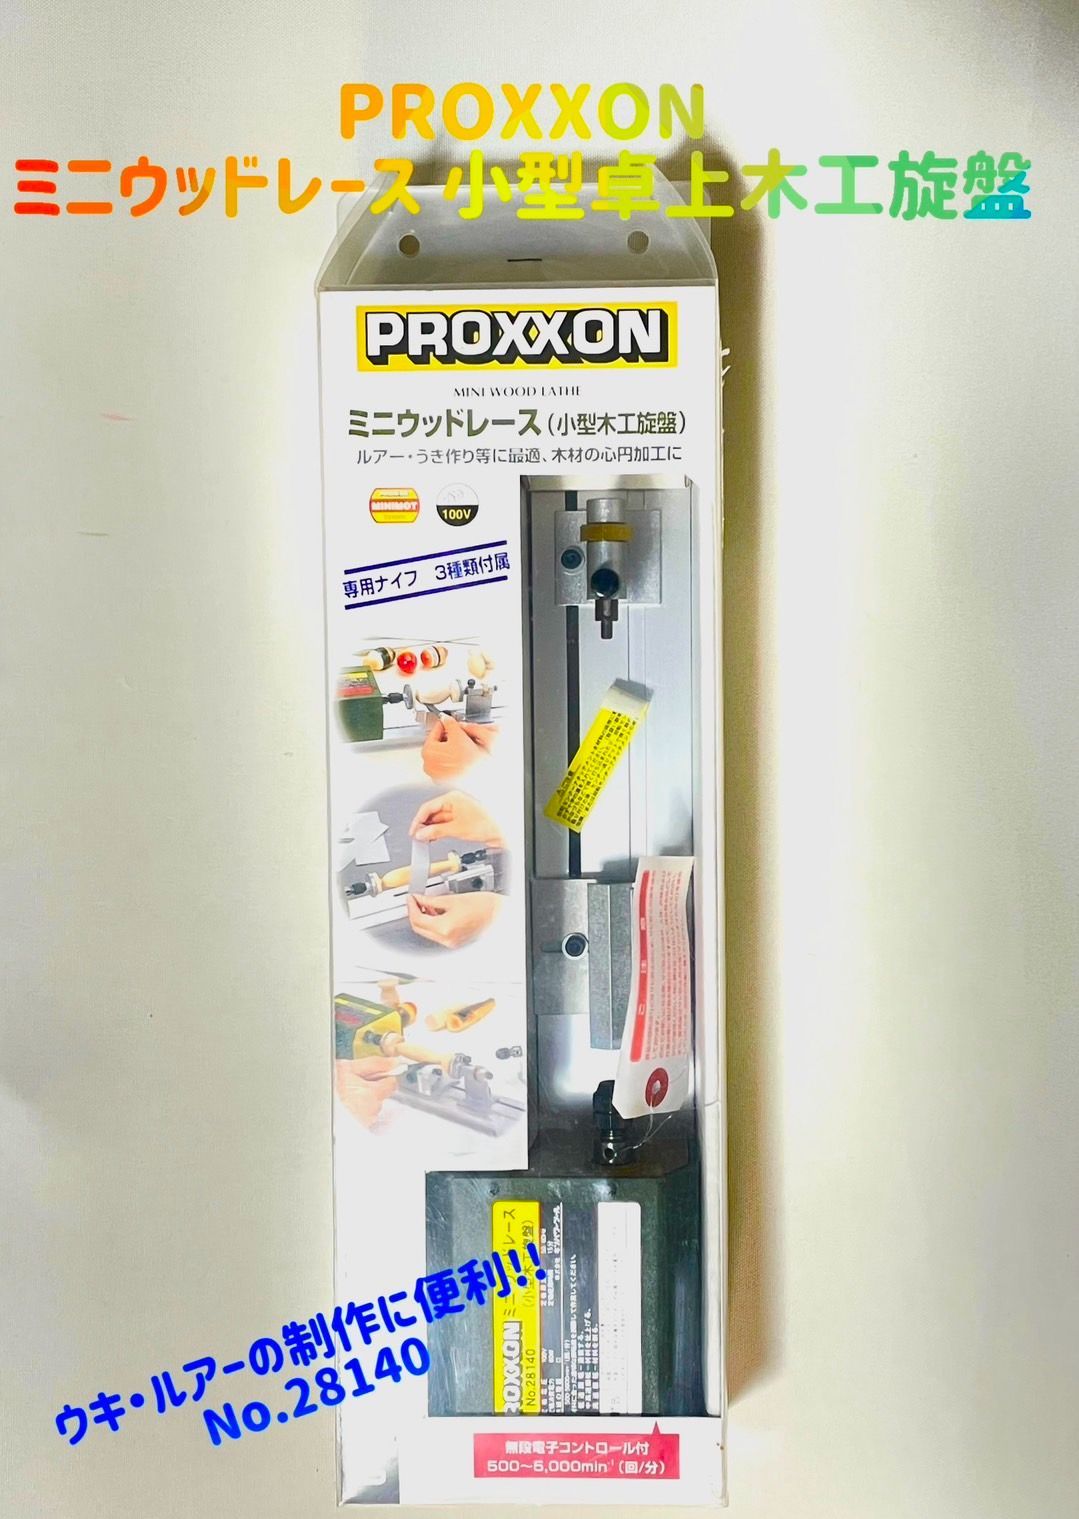 プロクソン(PROXXON) ミニウッドレース 小型卓上木工旋盤 ウキ・ルアーの制作に便利 No.28140 - 4